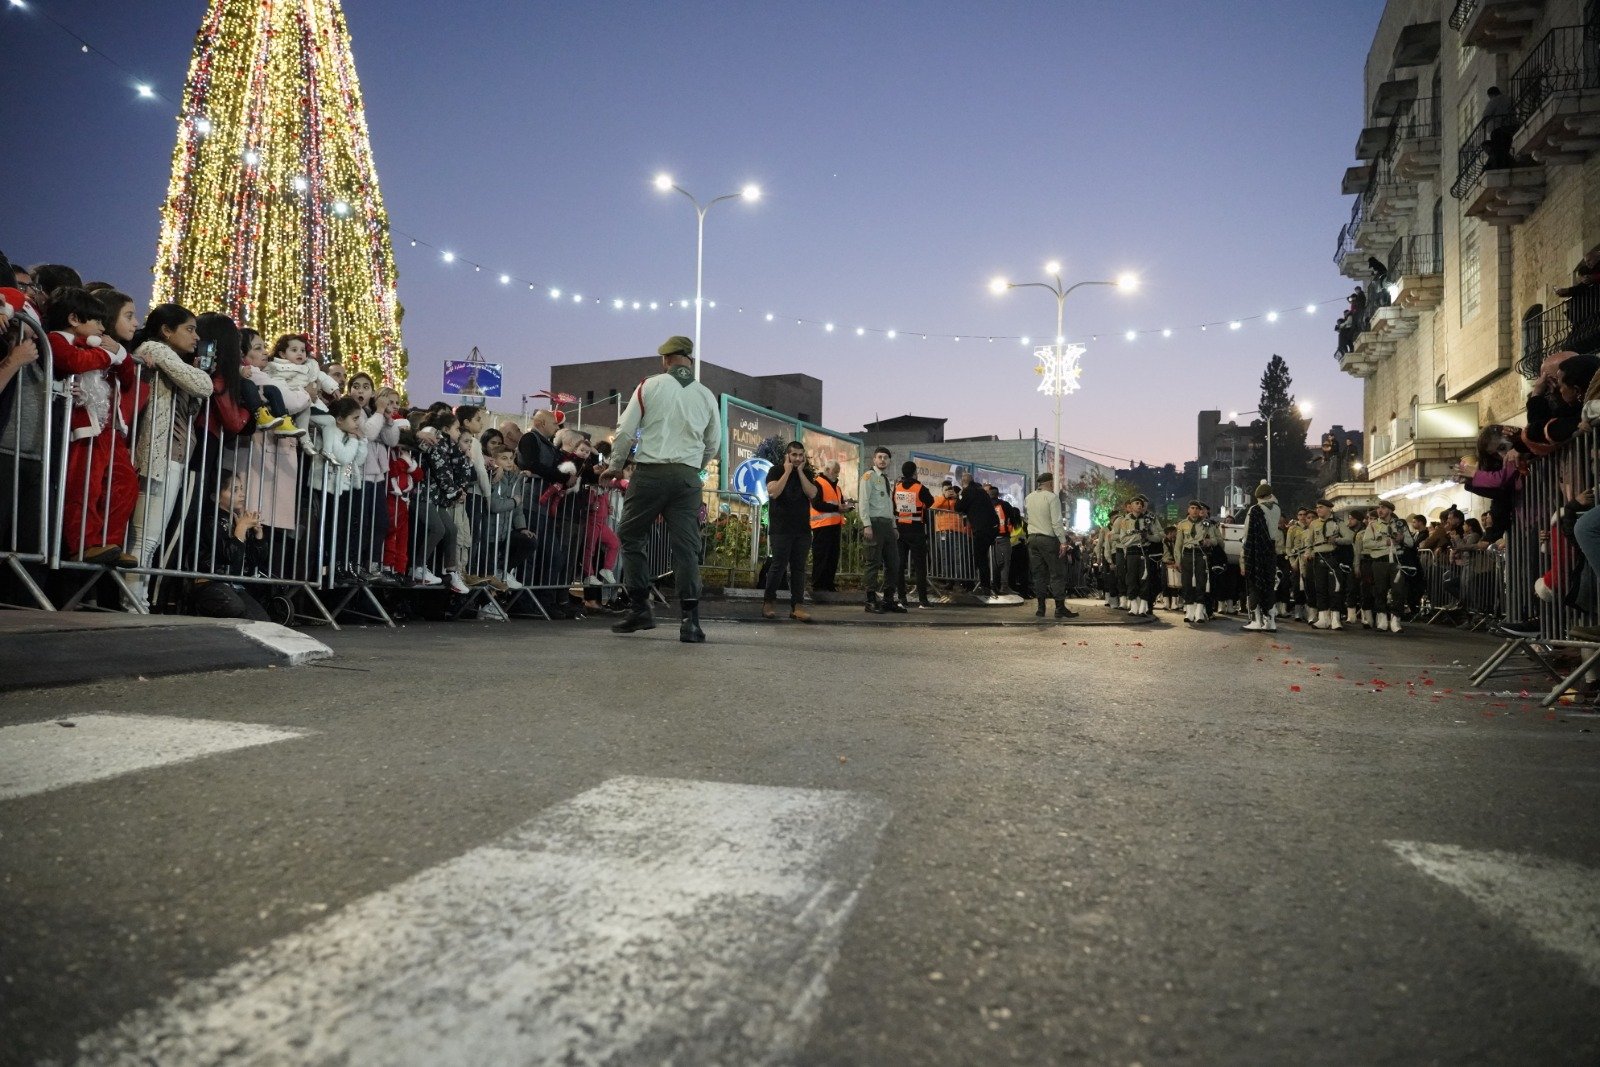 بالصور: "بكرا" يرصد فرحة استقبال الميلاد في الناصرة -235